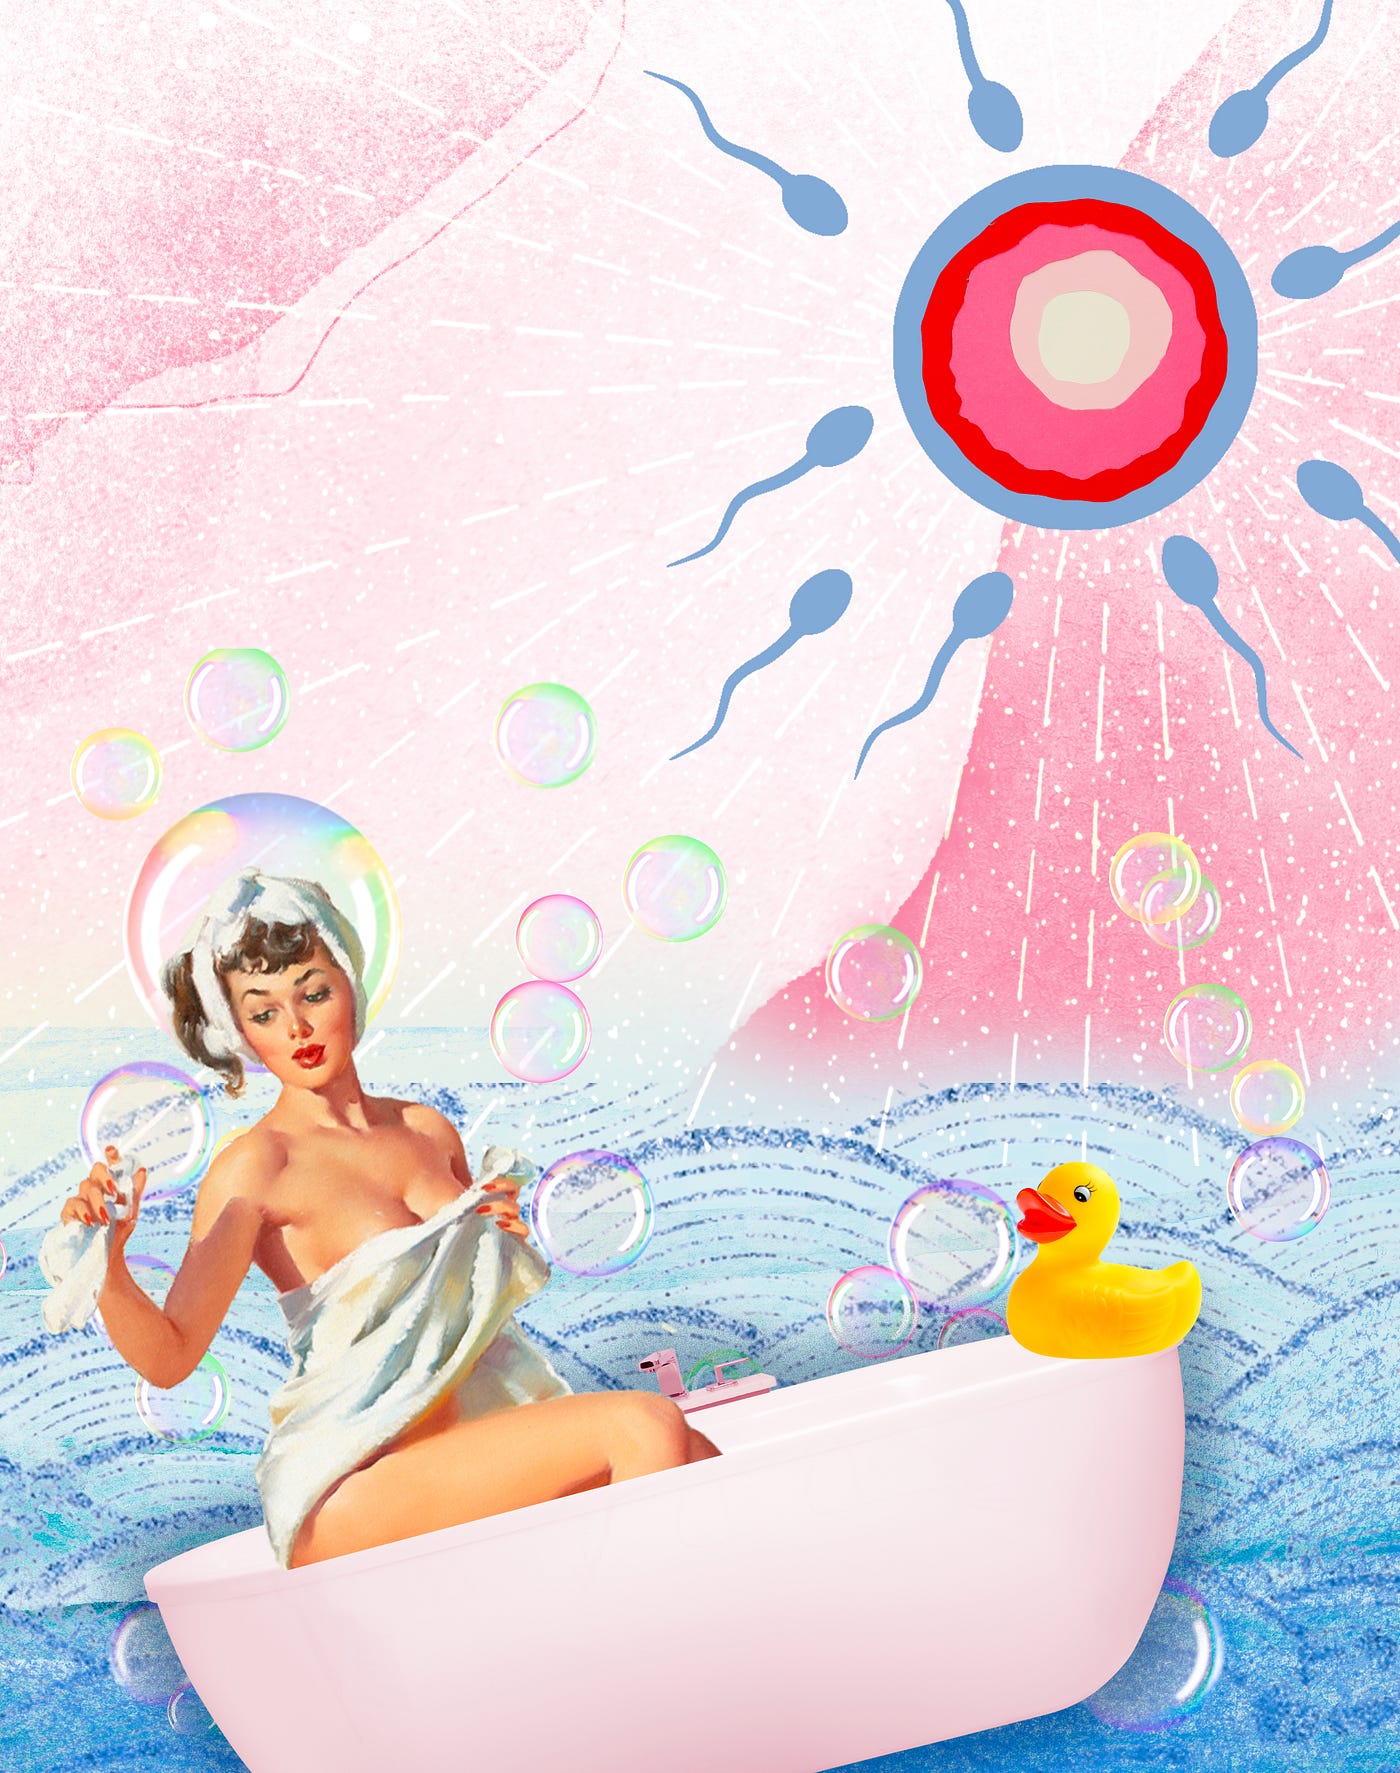 Sperm Baths, Vegan Condoms, And Semen Gel…Oh My! by Carlyn Beccia Sexography Medium